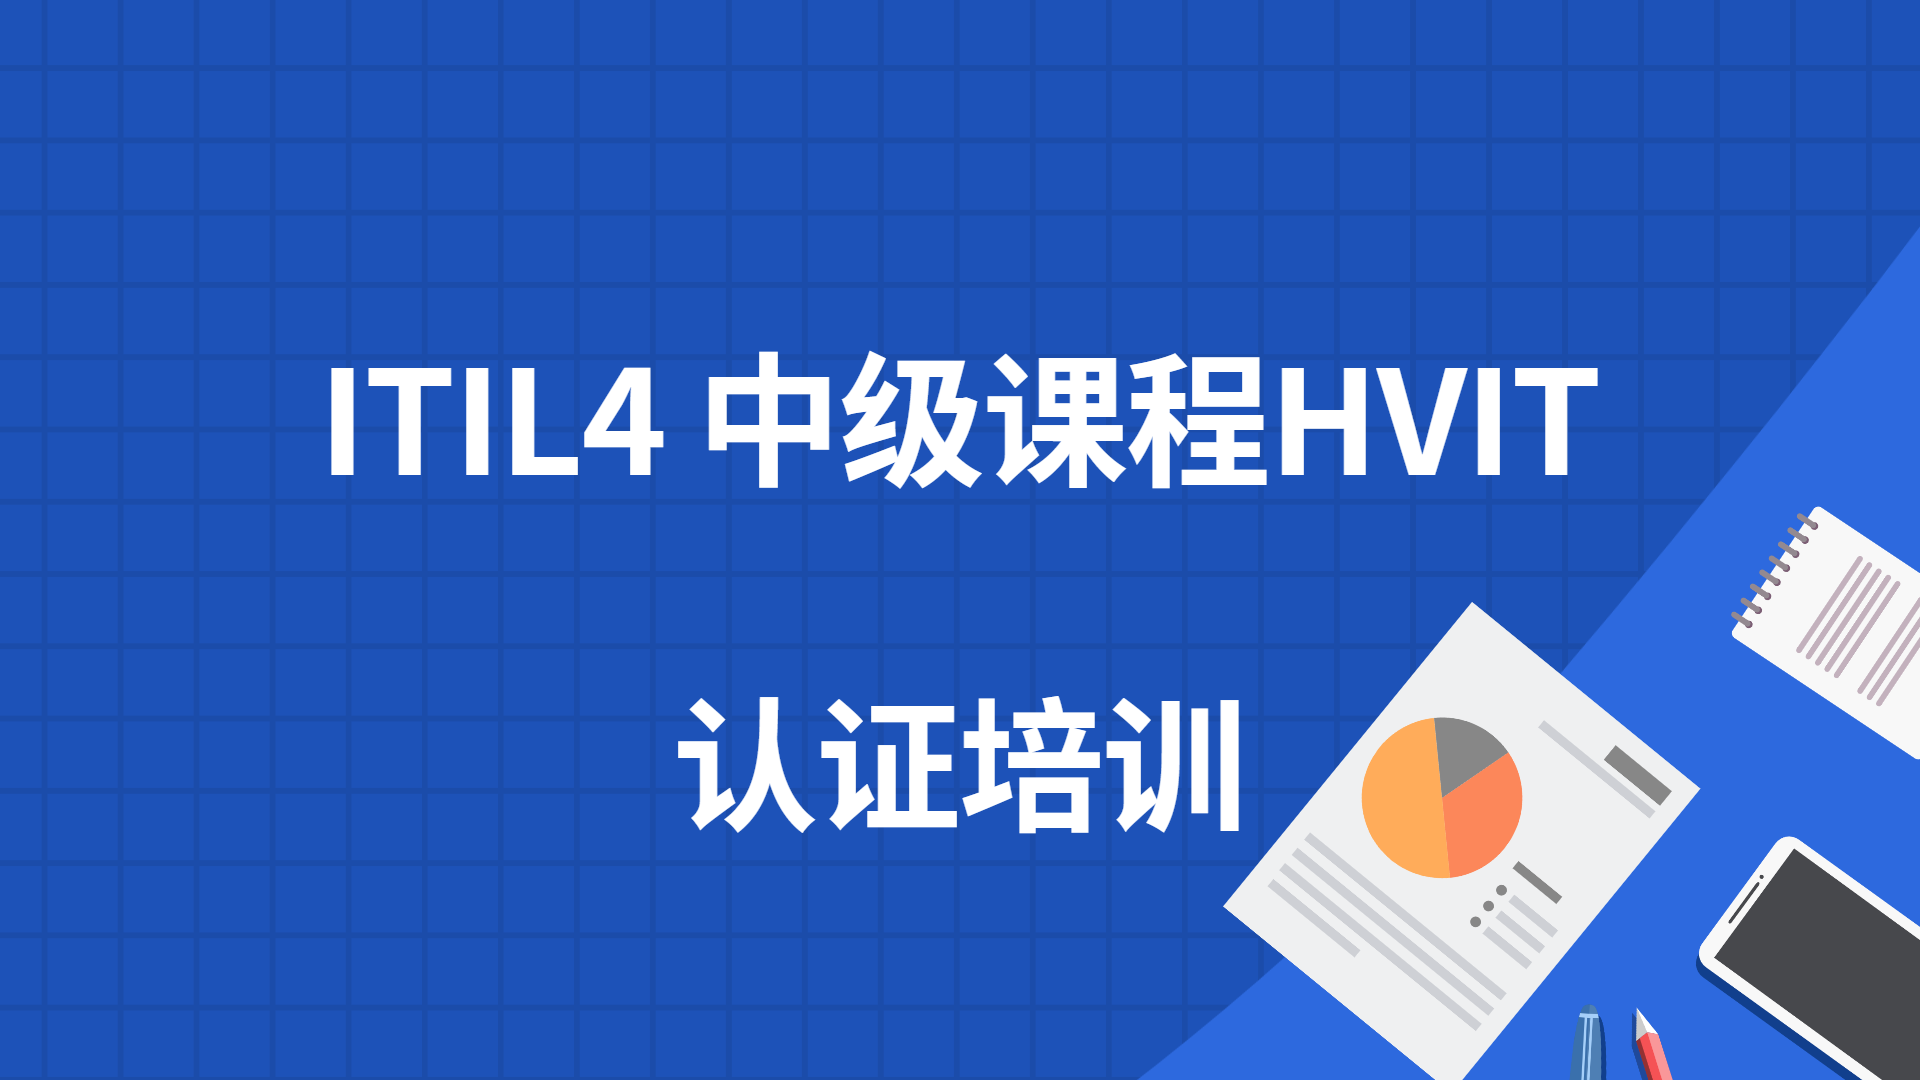 ITIL4中级课程HVIT培训